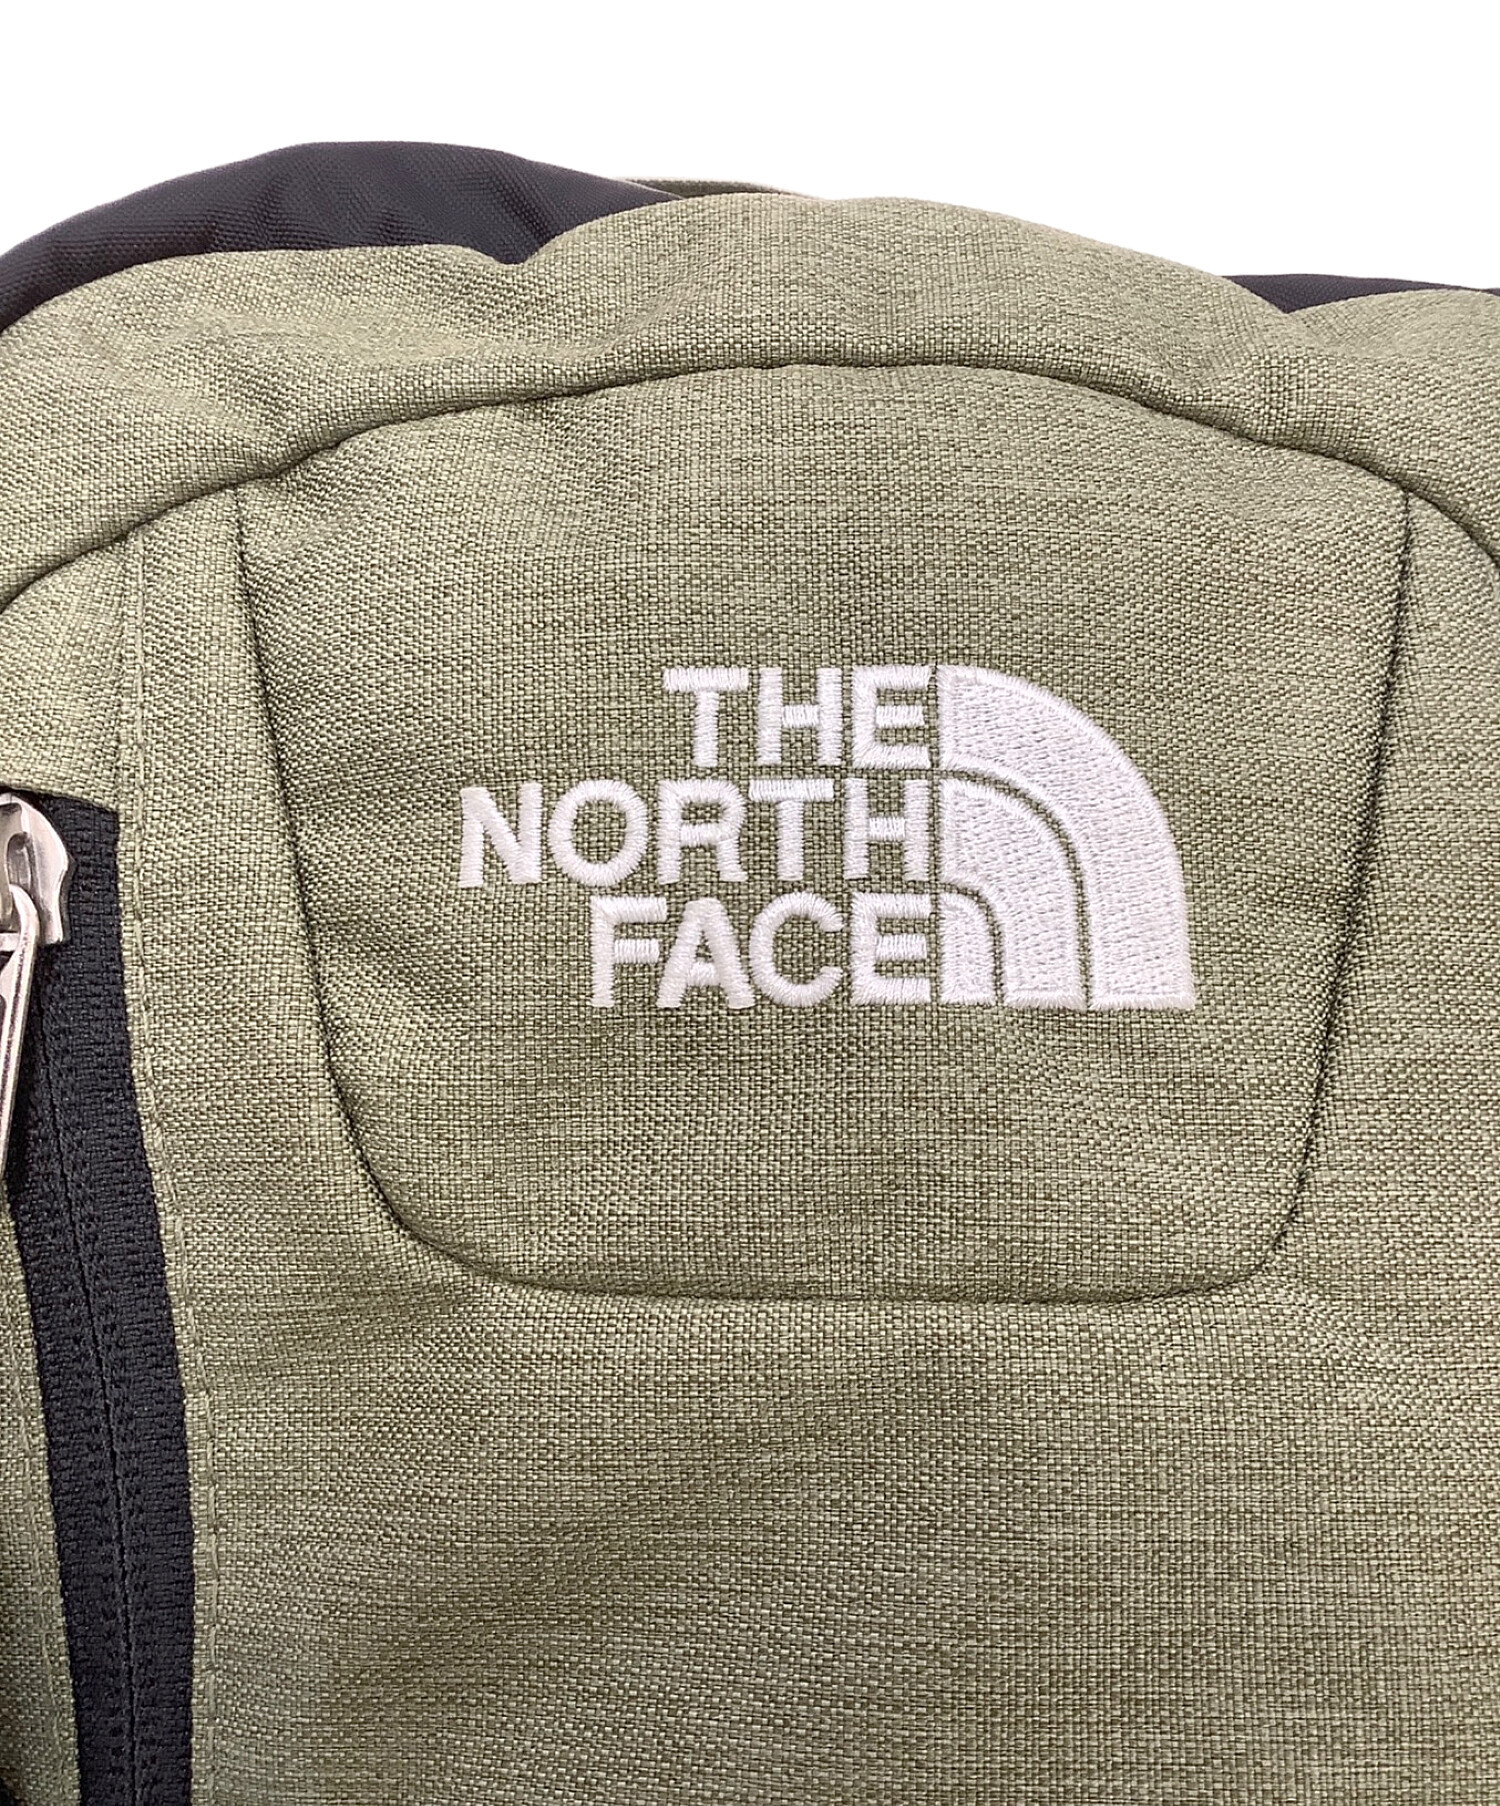 THE NORTH FACE (ザ ノース フェイス) ビッグショット クラシック ブラック×グリーン